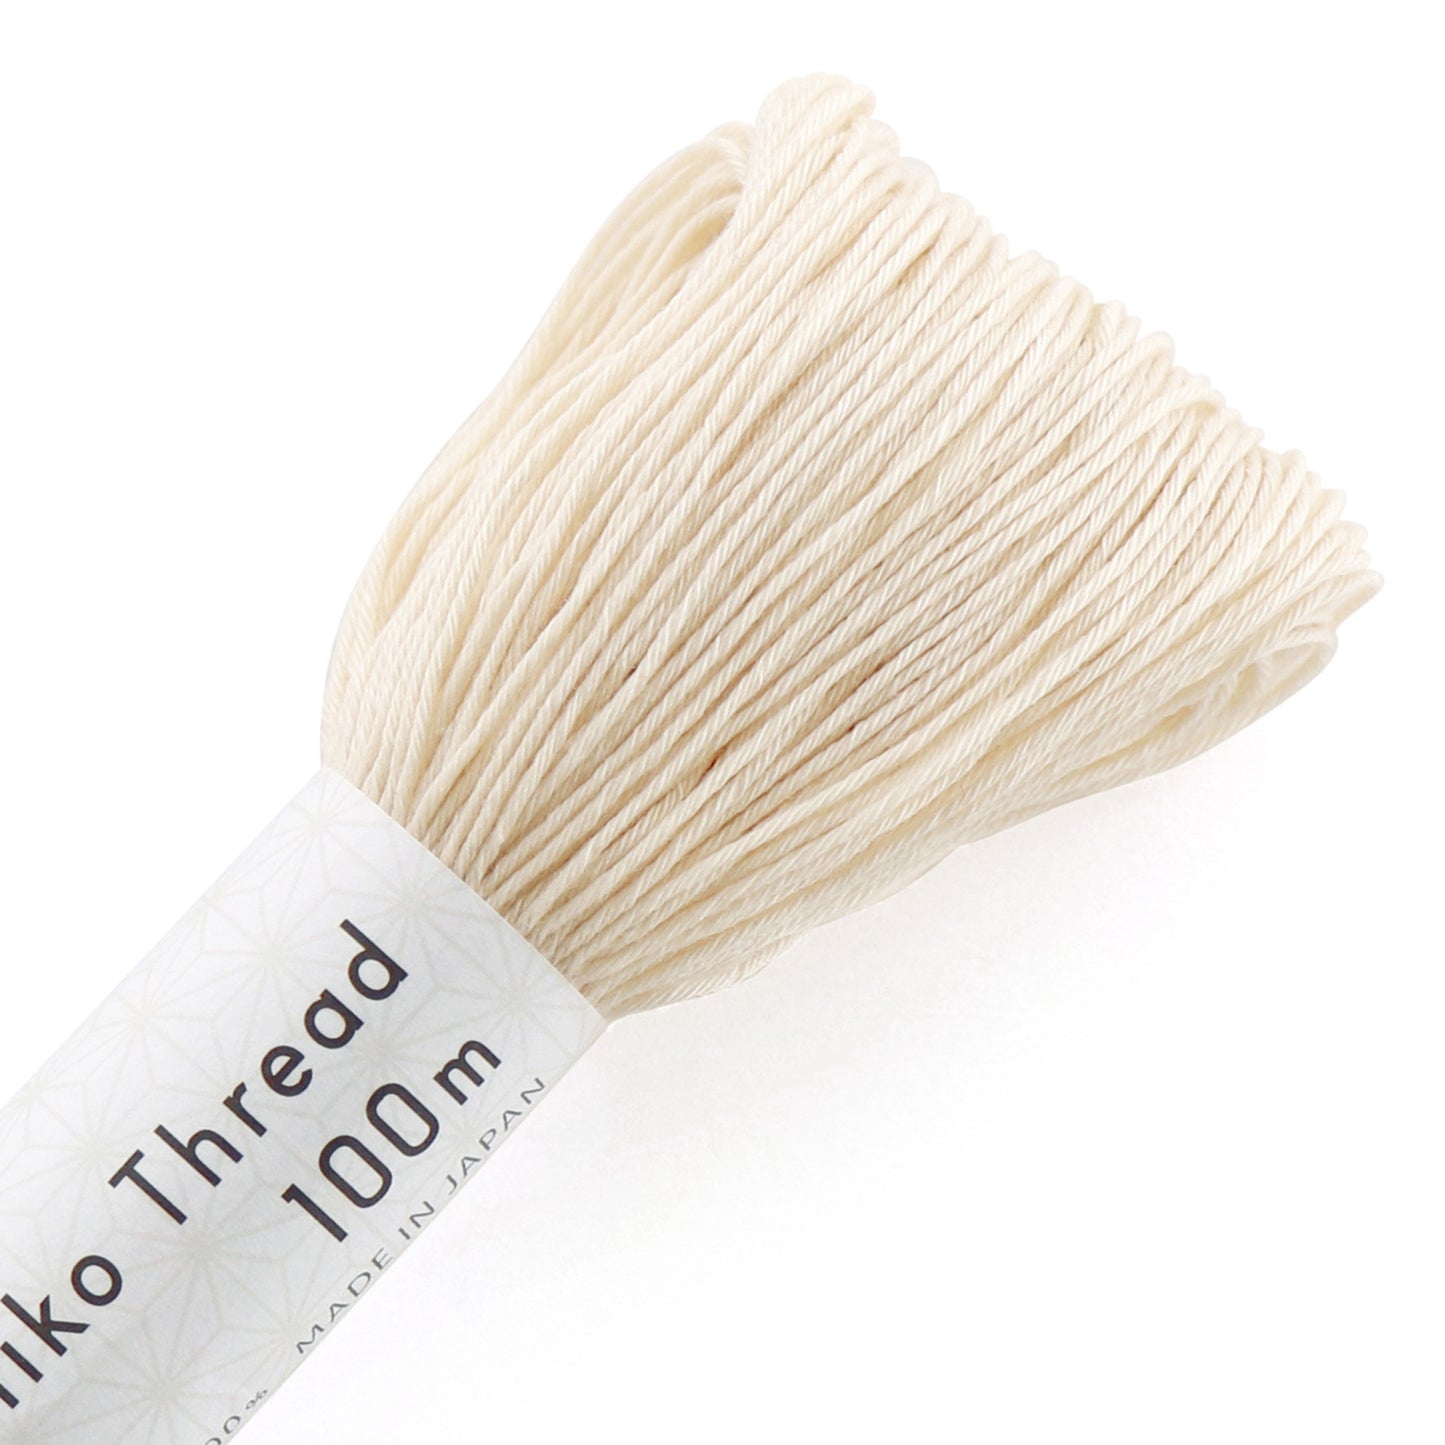 Olympus #102 Japanese cotton Sashiko thread OFF WHITE 100 meter skein